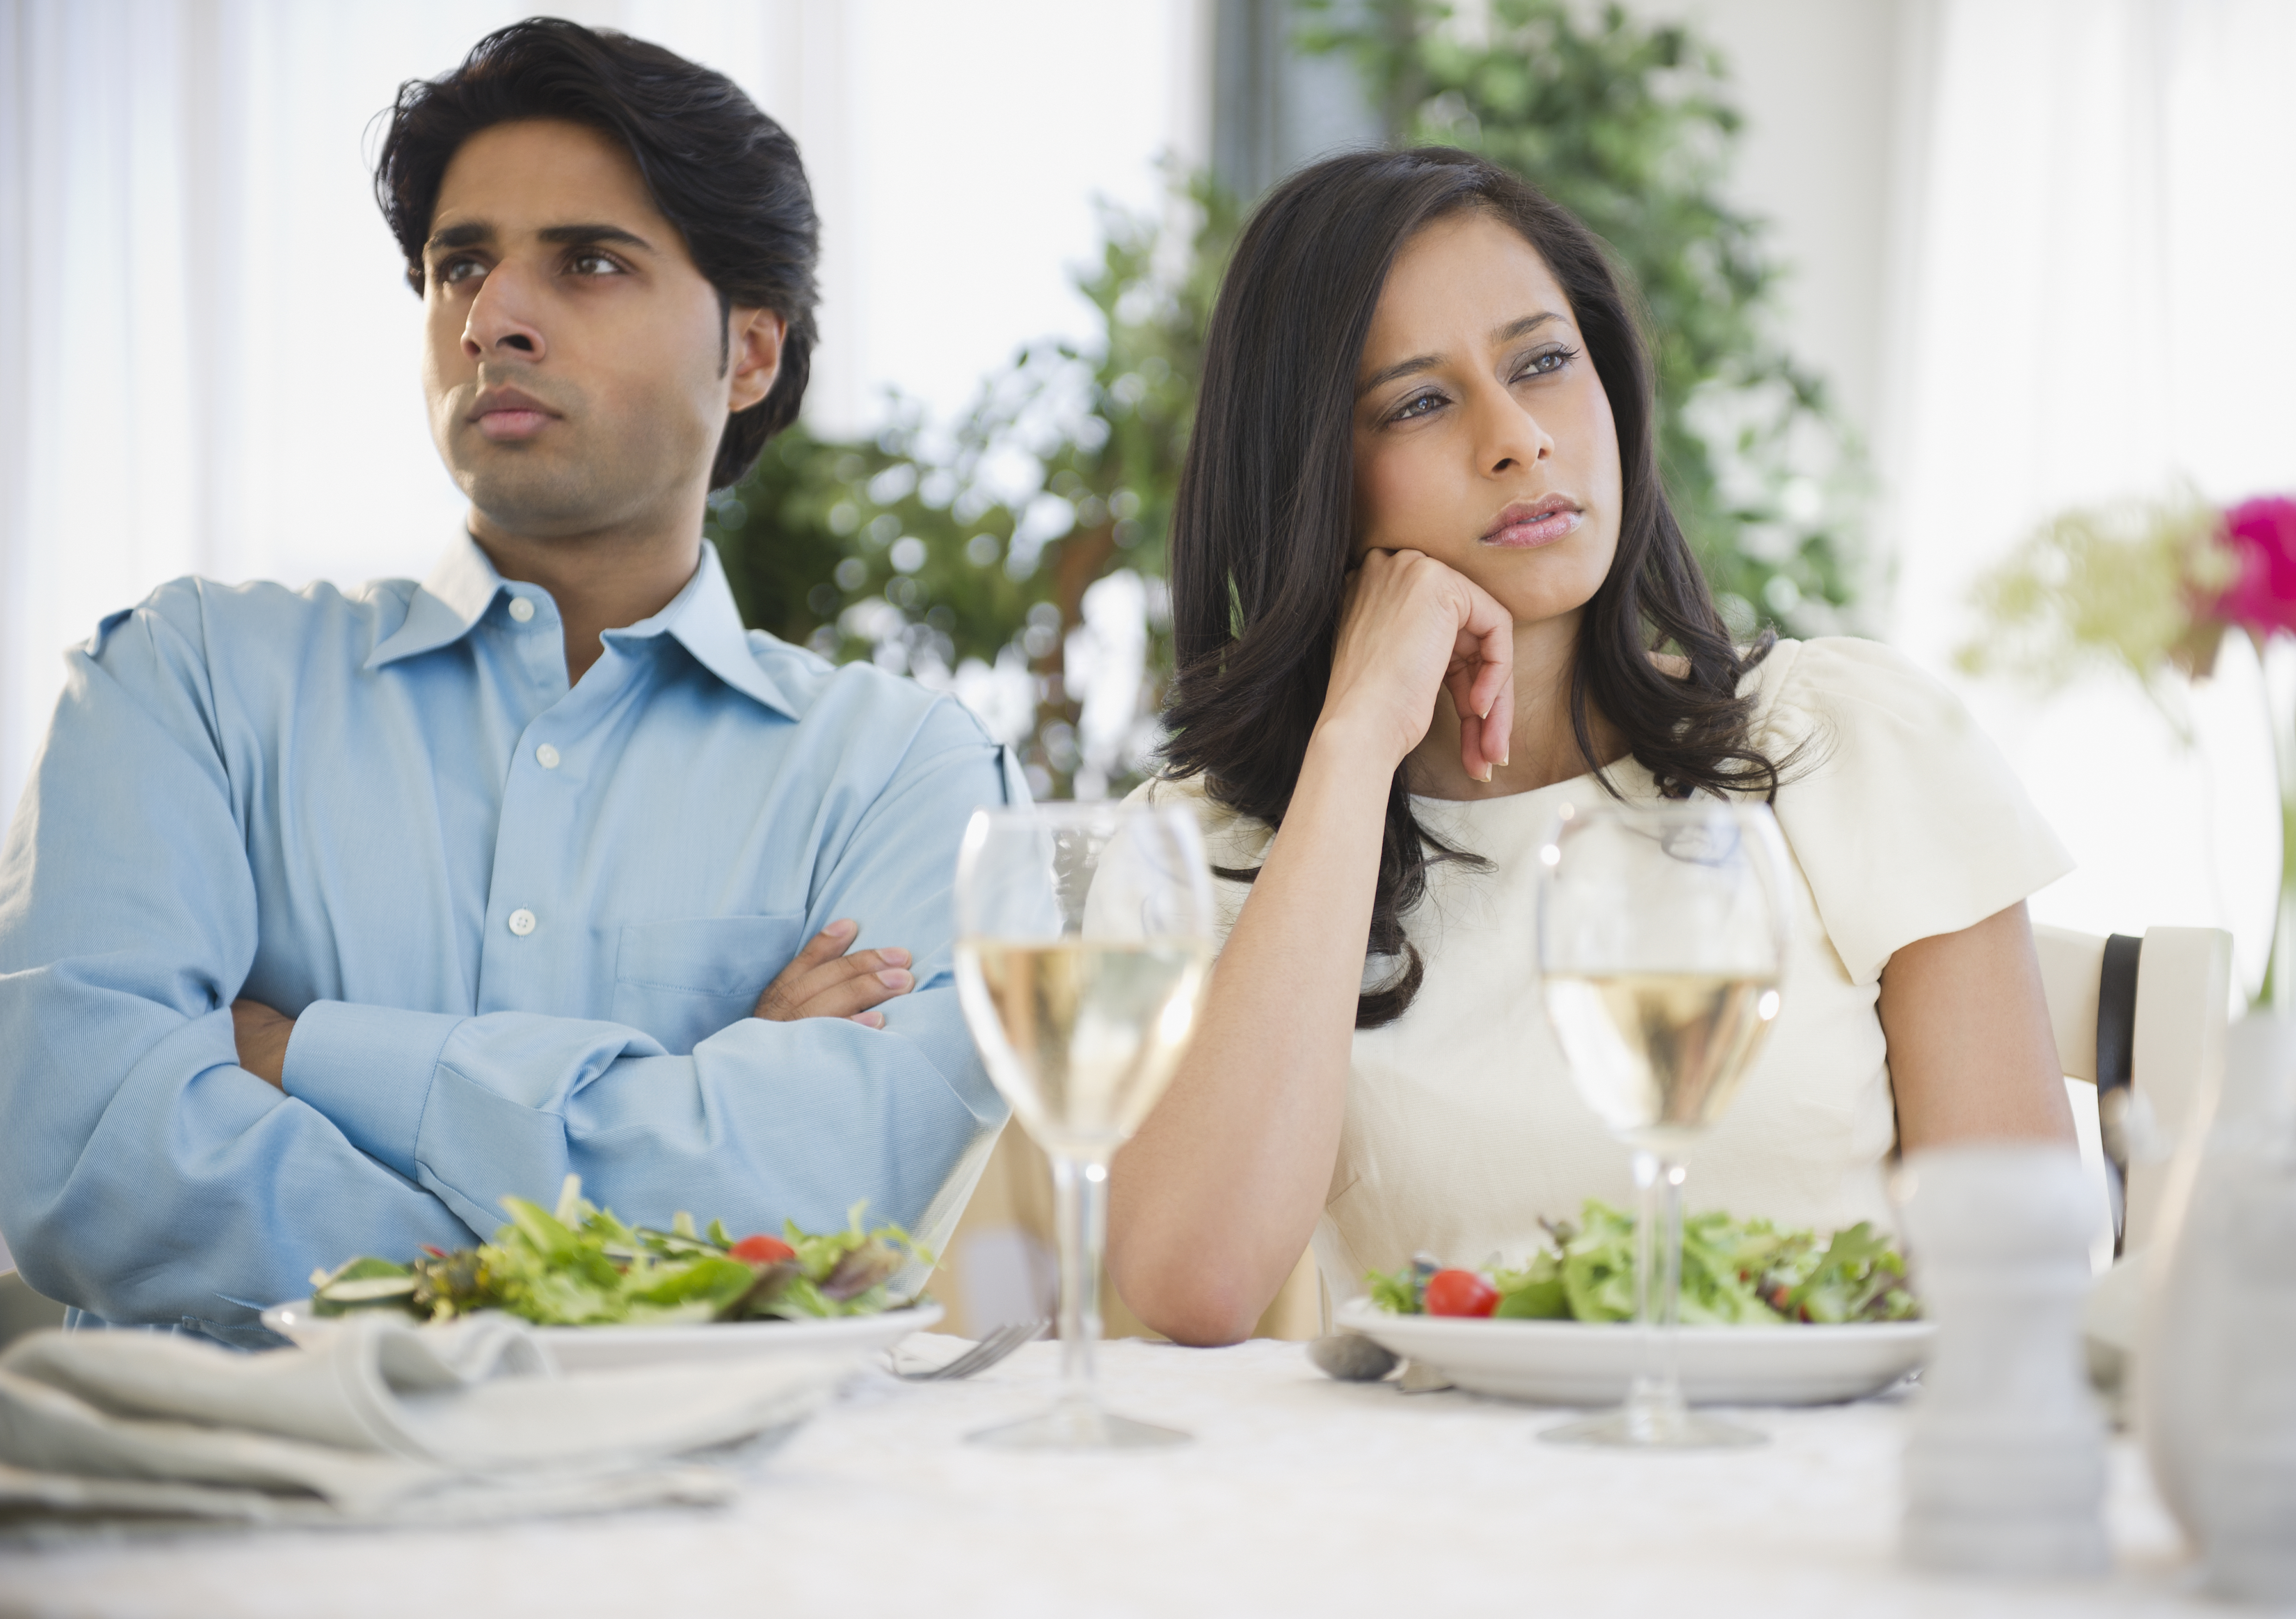 Un homme et une femme ne discutent pas alors qu'ils sont assis à une table | Source : Getty Images